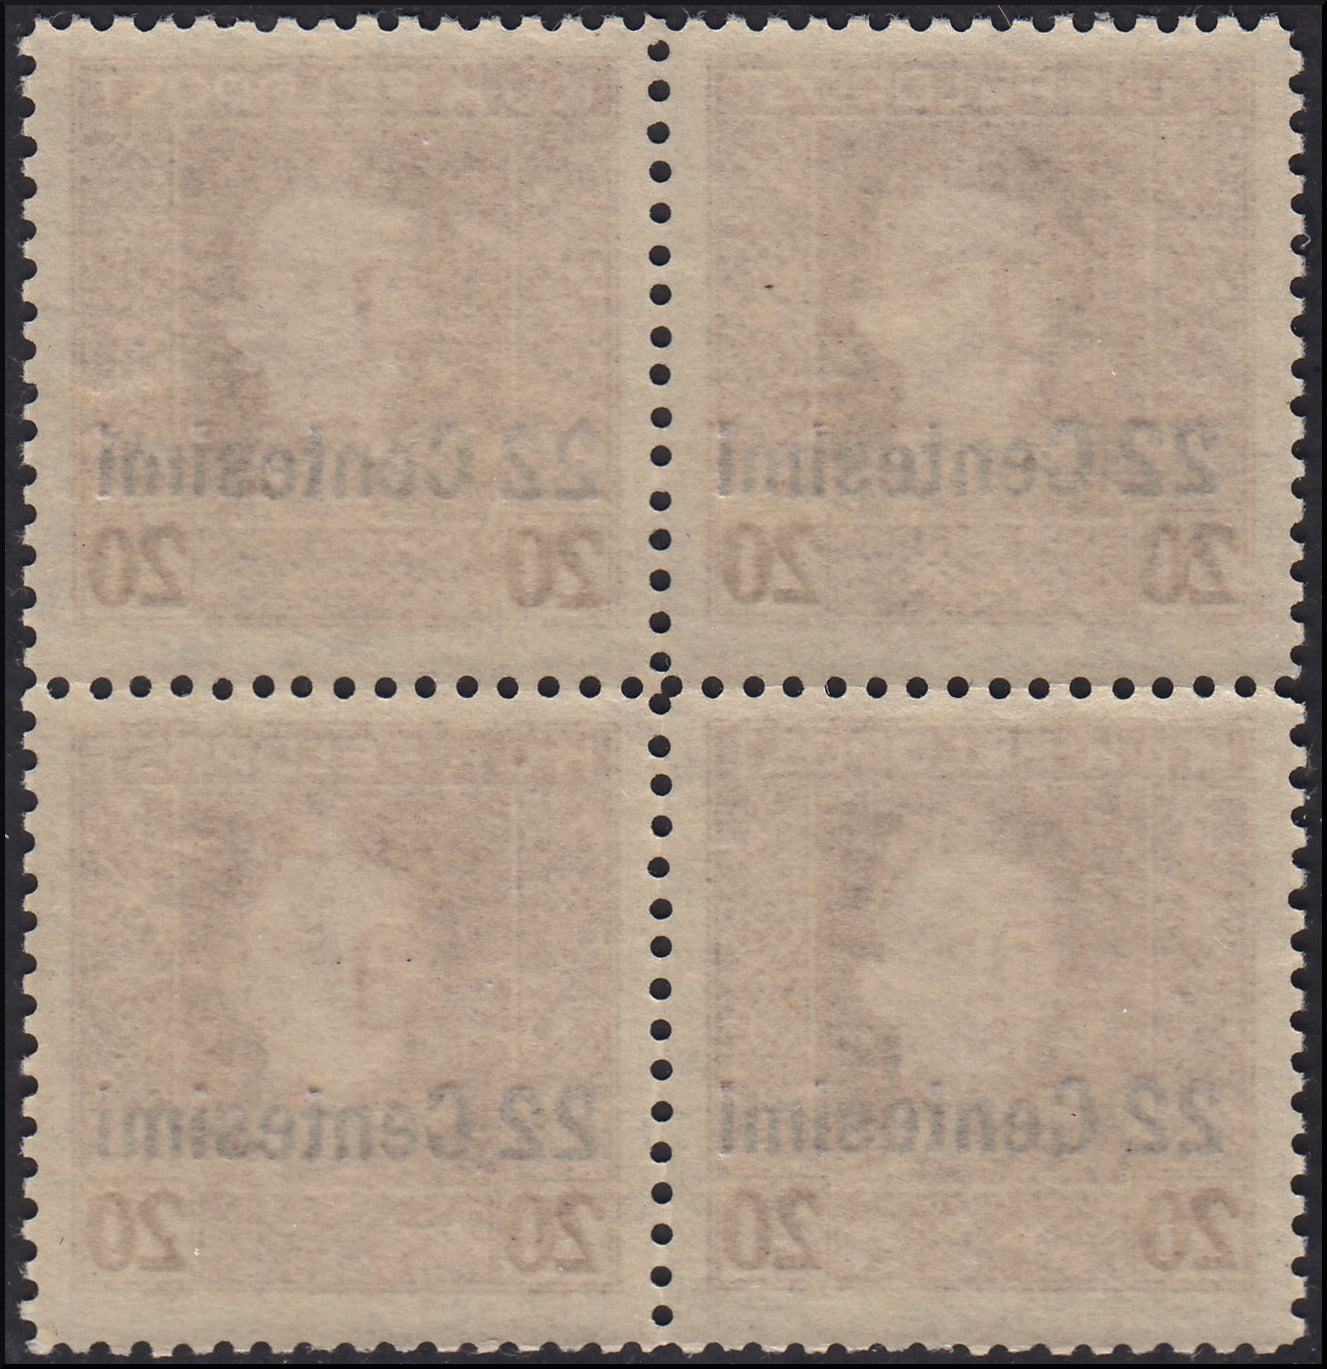 A04 - 1918 -  Occupazione Austriaca del Friuli e del Veneto, francobolli di Austria soprastampati, c.22 su 20 bruno dentellatura 11 1/2 invece che 12 1/2, blocco di quattro esemplari nuovo con gomma integra (9aa)